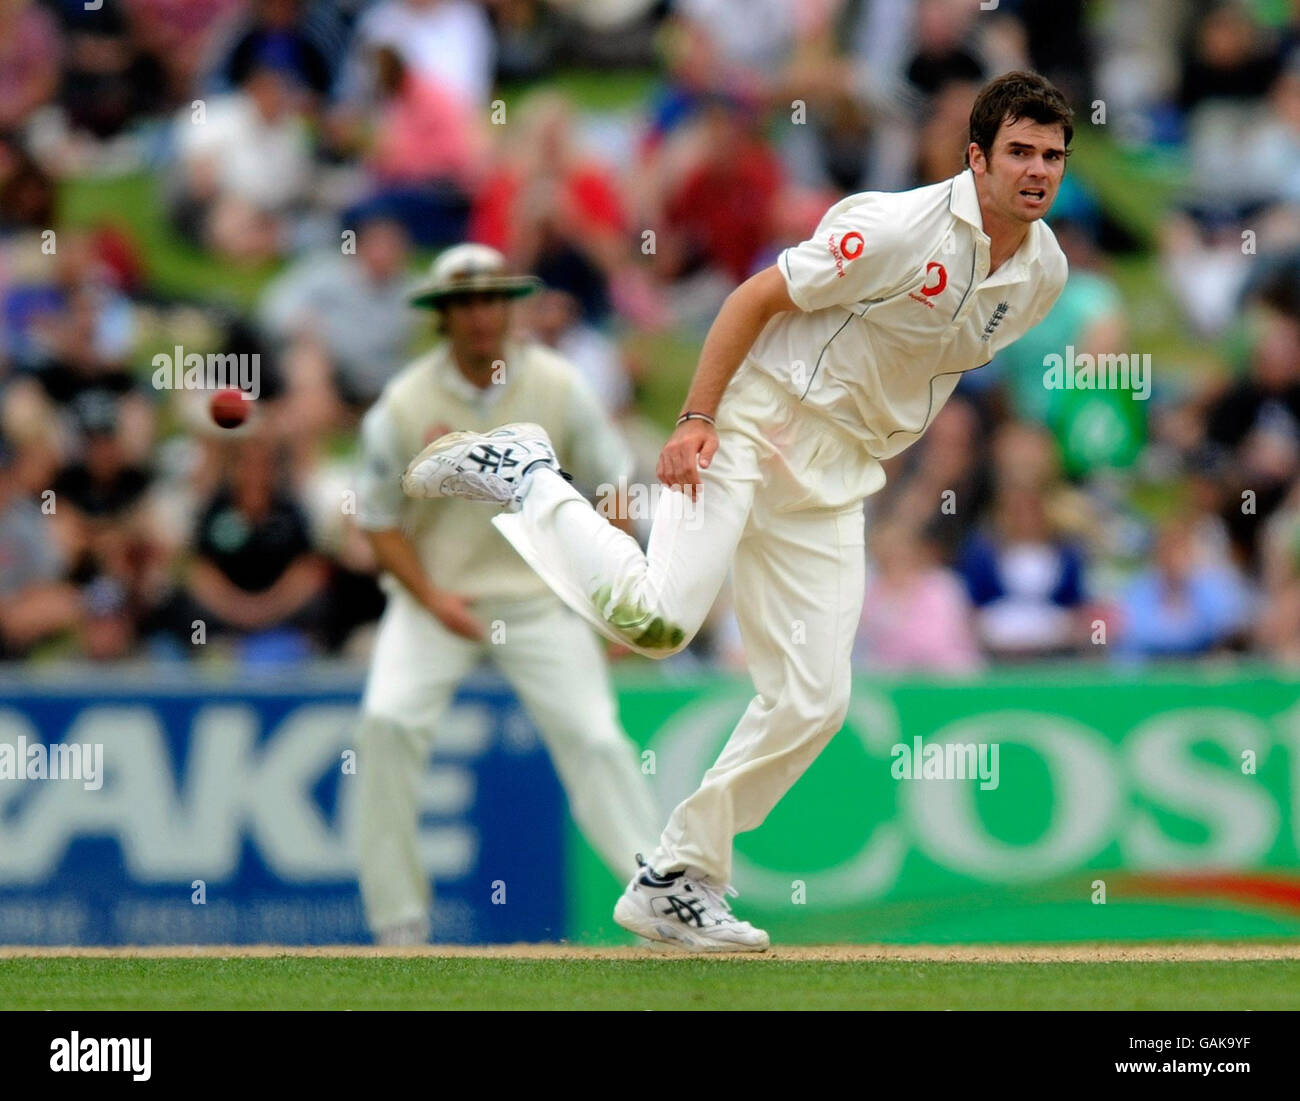 Cricket - Nouvelle-Zélande / Angleterre - 3e Test - 2e jour - Napier.James Anderson, en Angleterre, regarde le ballon pendant 4, lance son bowling lors du 3e test à McLean Park, Napier, en Nouvelle-Zélande. Banque D'Images